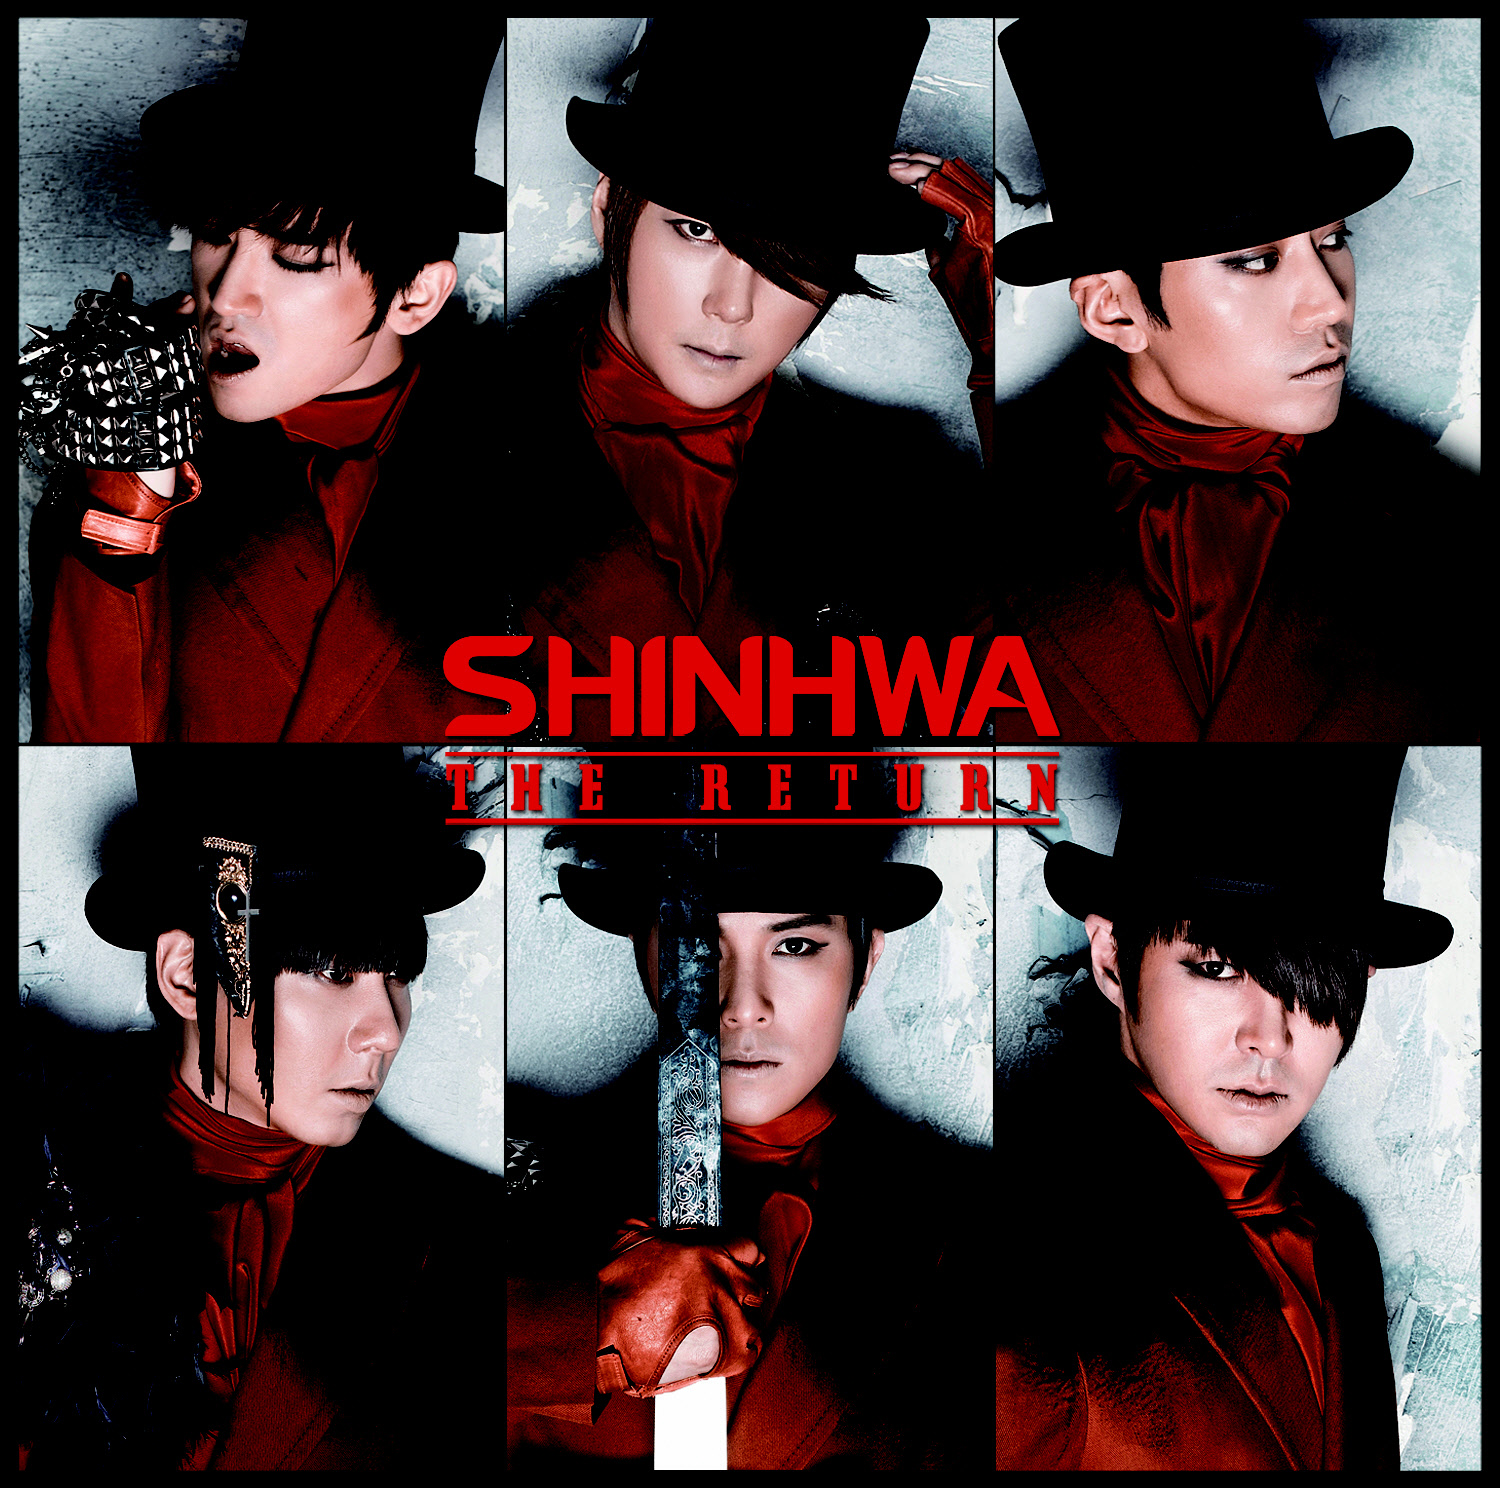 shinhwa resolver album download